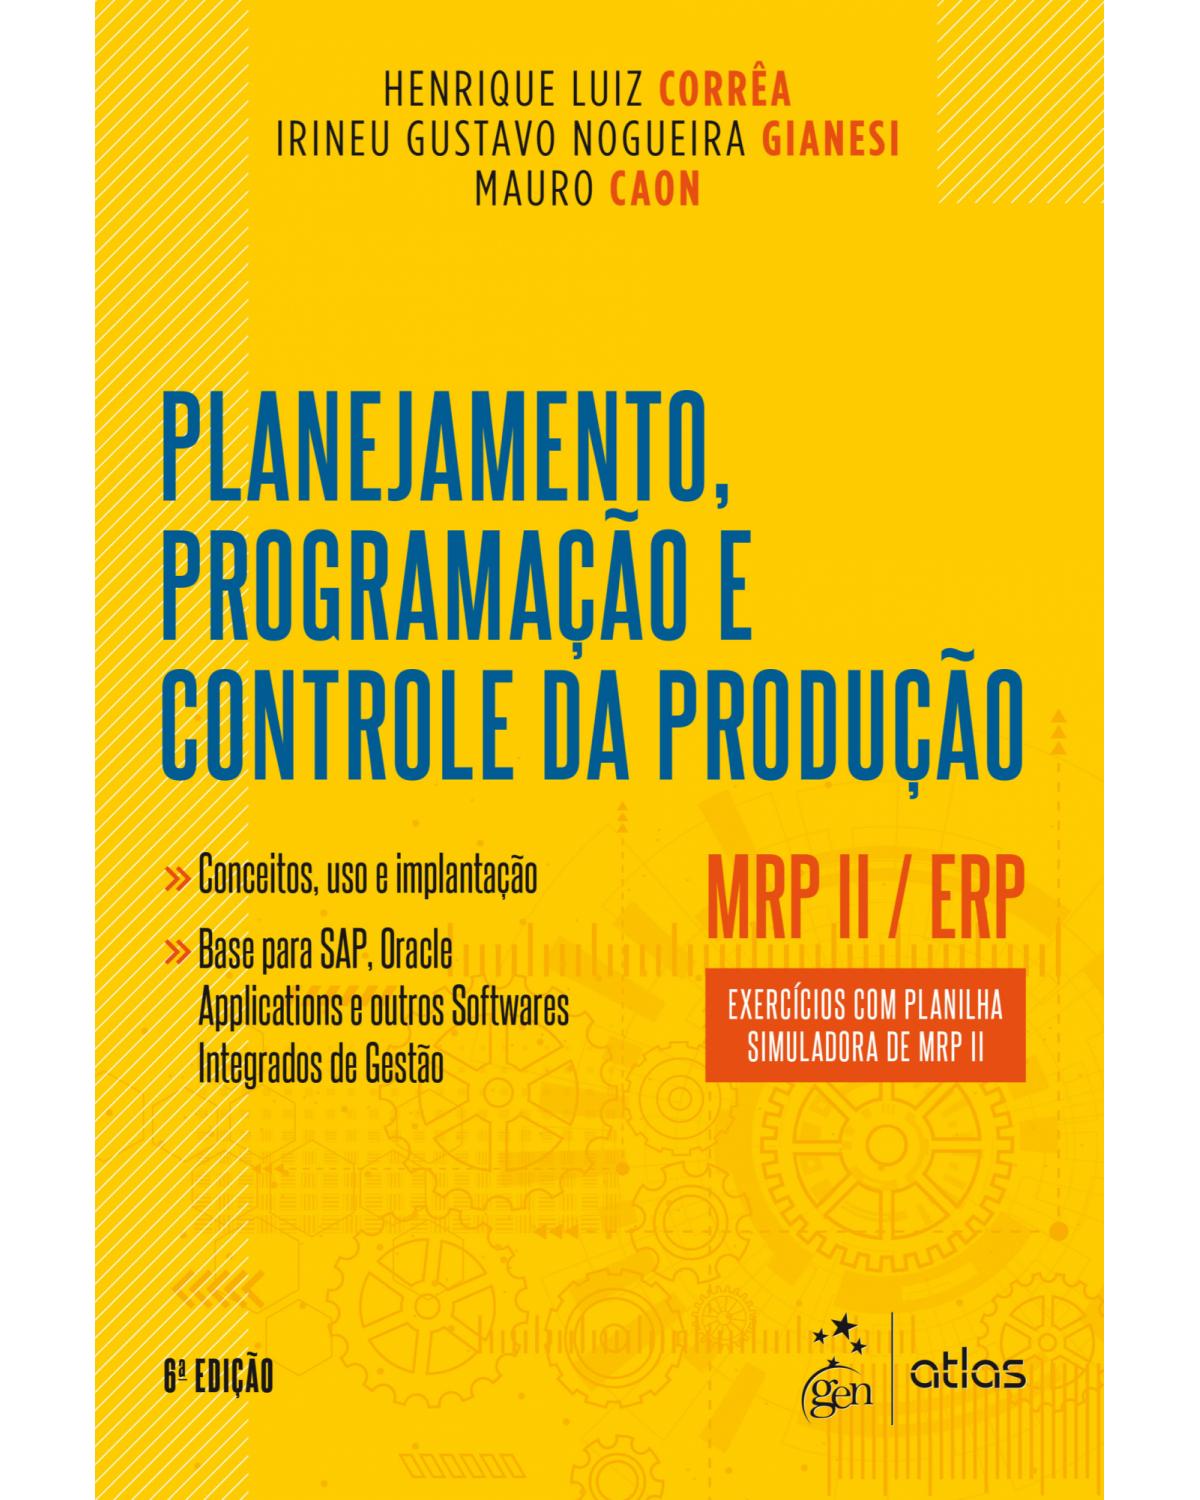 Planejamento, programação e controle da produção - MRP II / ERP - Exercícios com planilha simuladora de MRP II - 6ª Edição | 2018